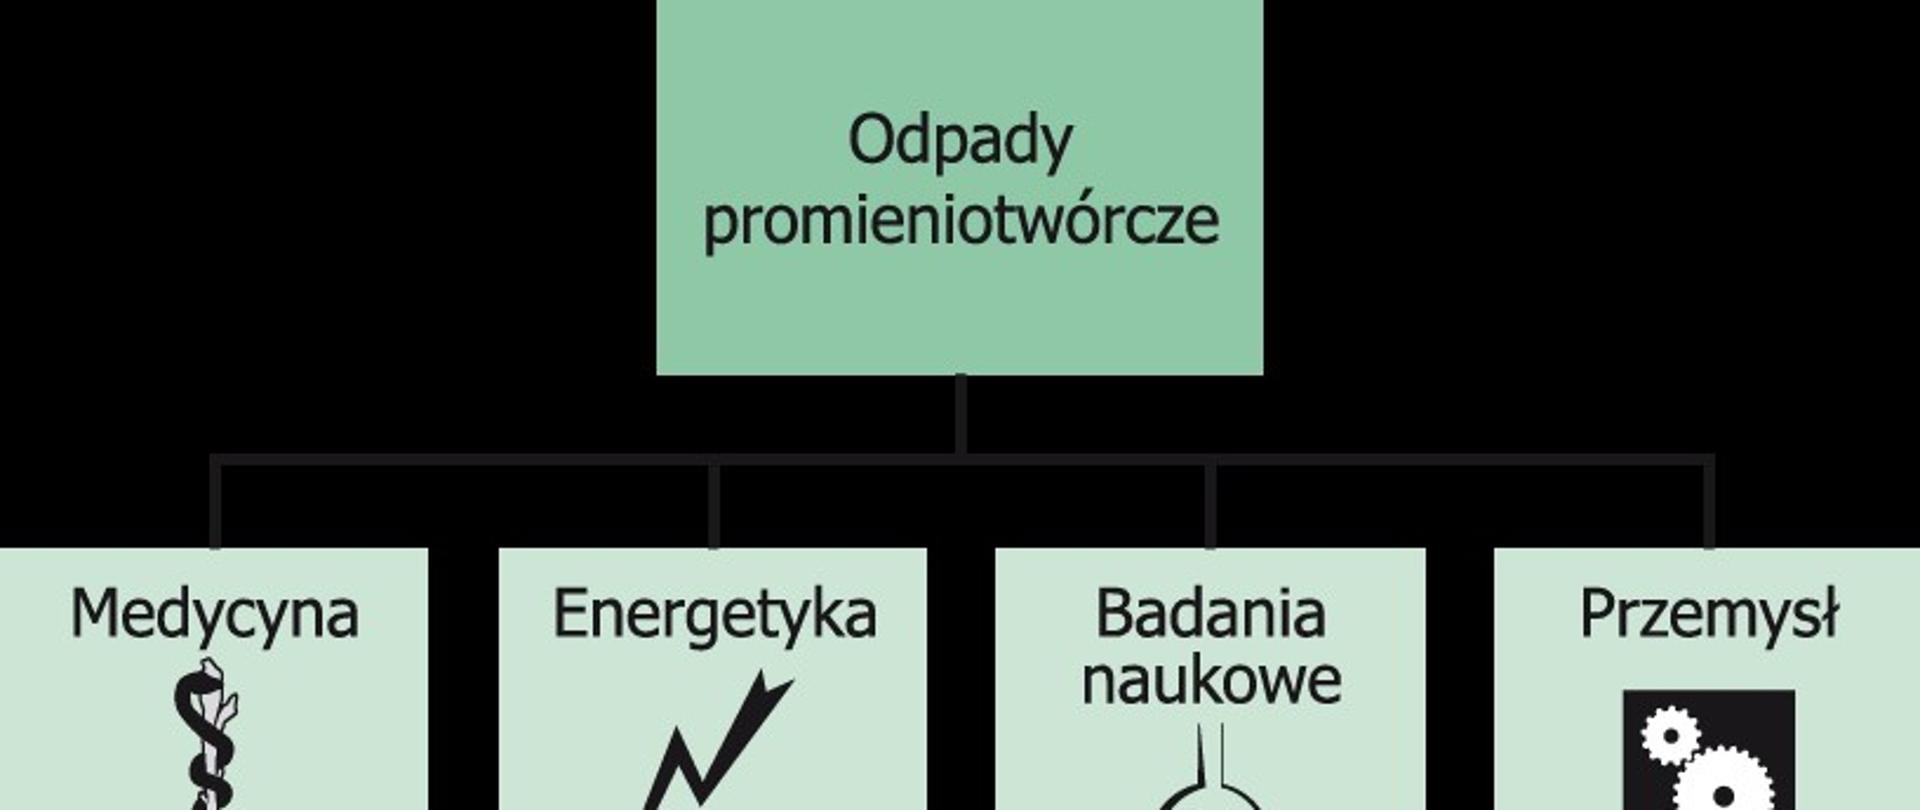 W Polsce odpady promieniotwórcze powstają w wyniku działalności związanej z wykorzysta­niem substancji promieniotwórczych w przemyśle, medycynie, badaniach naukowych, branży spożywczej i kosmetycznej.